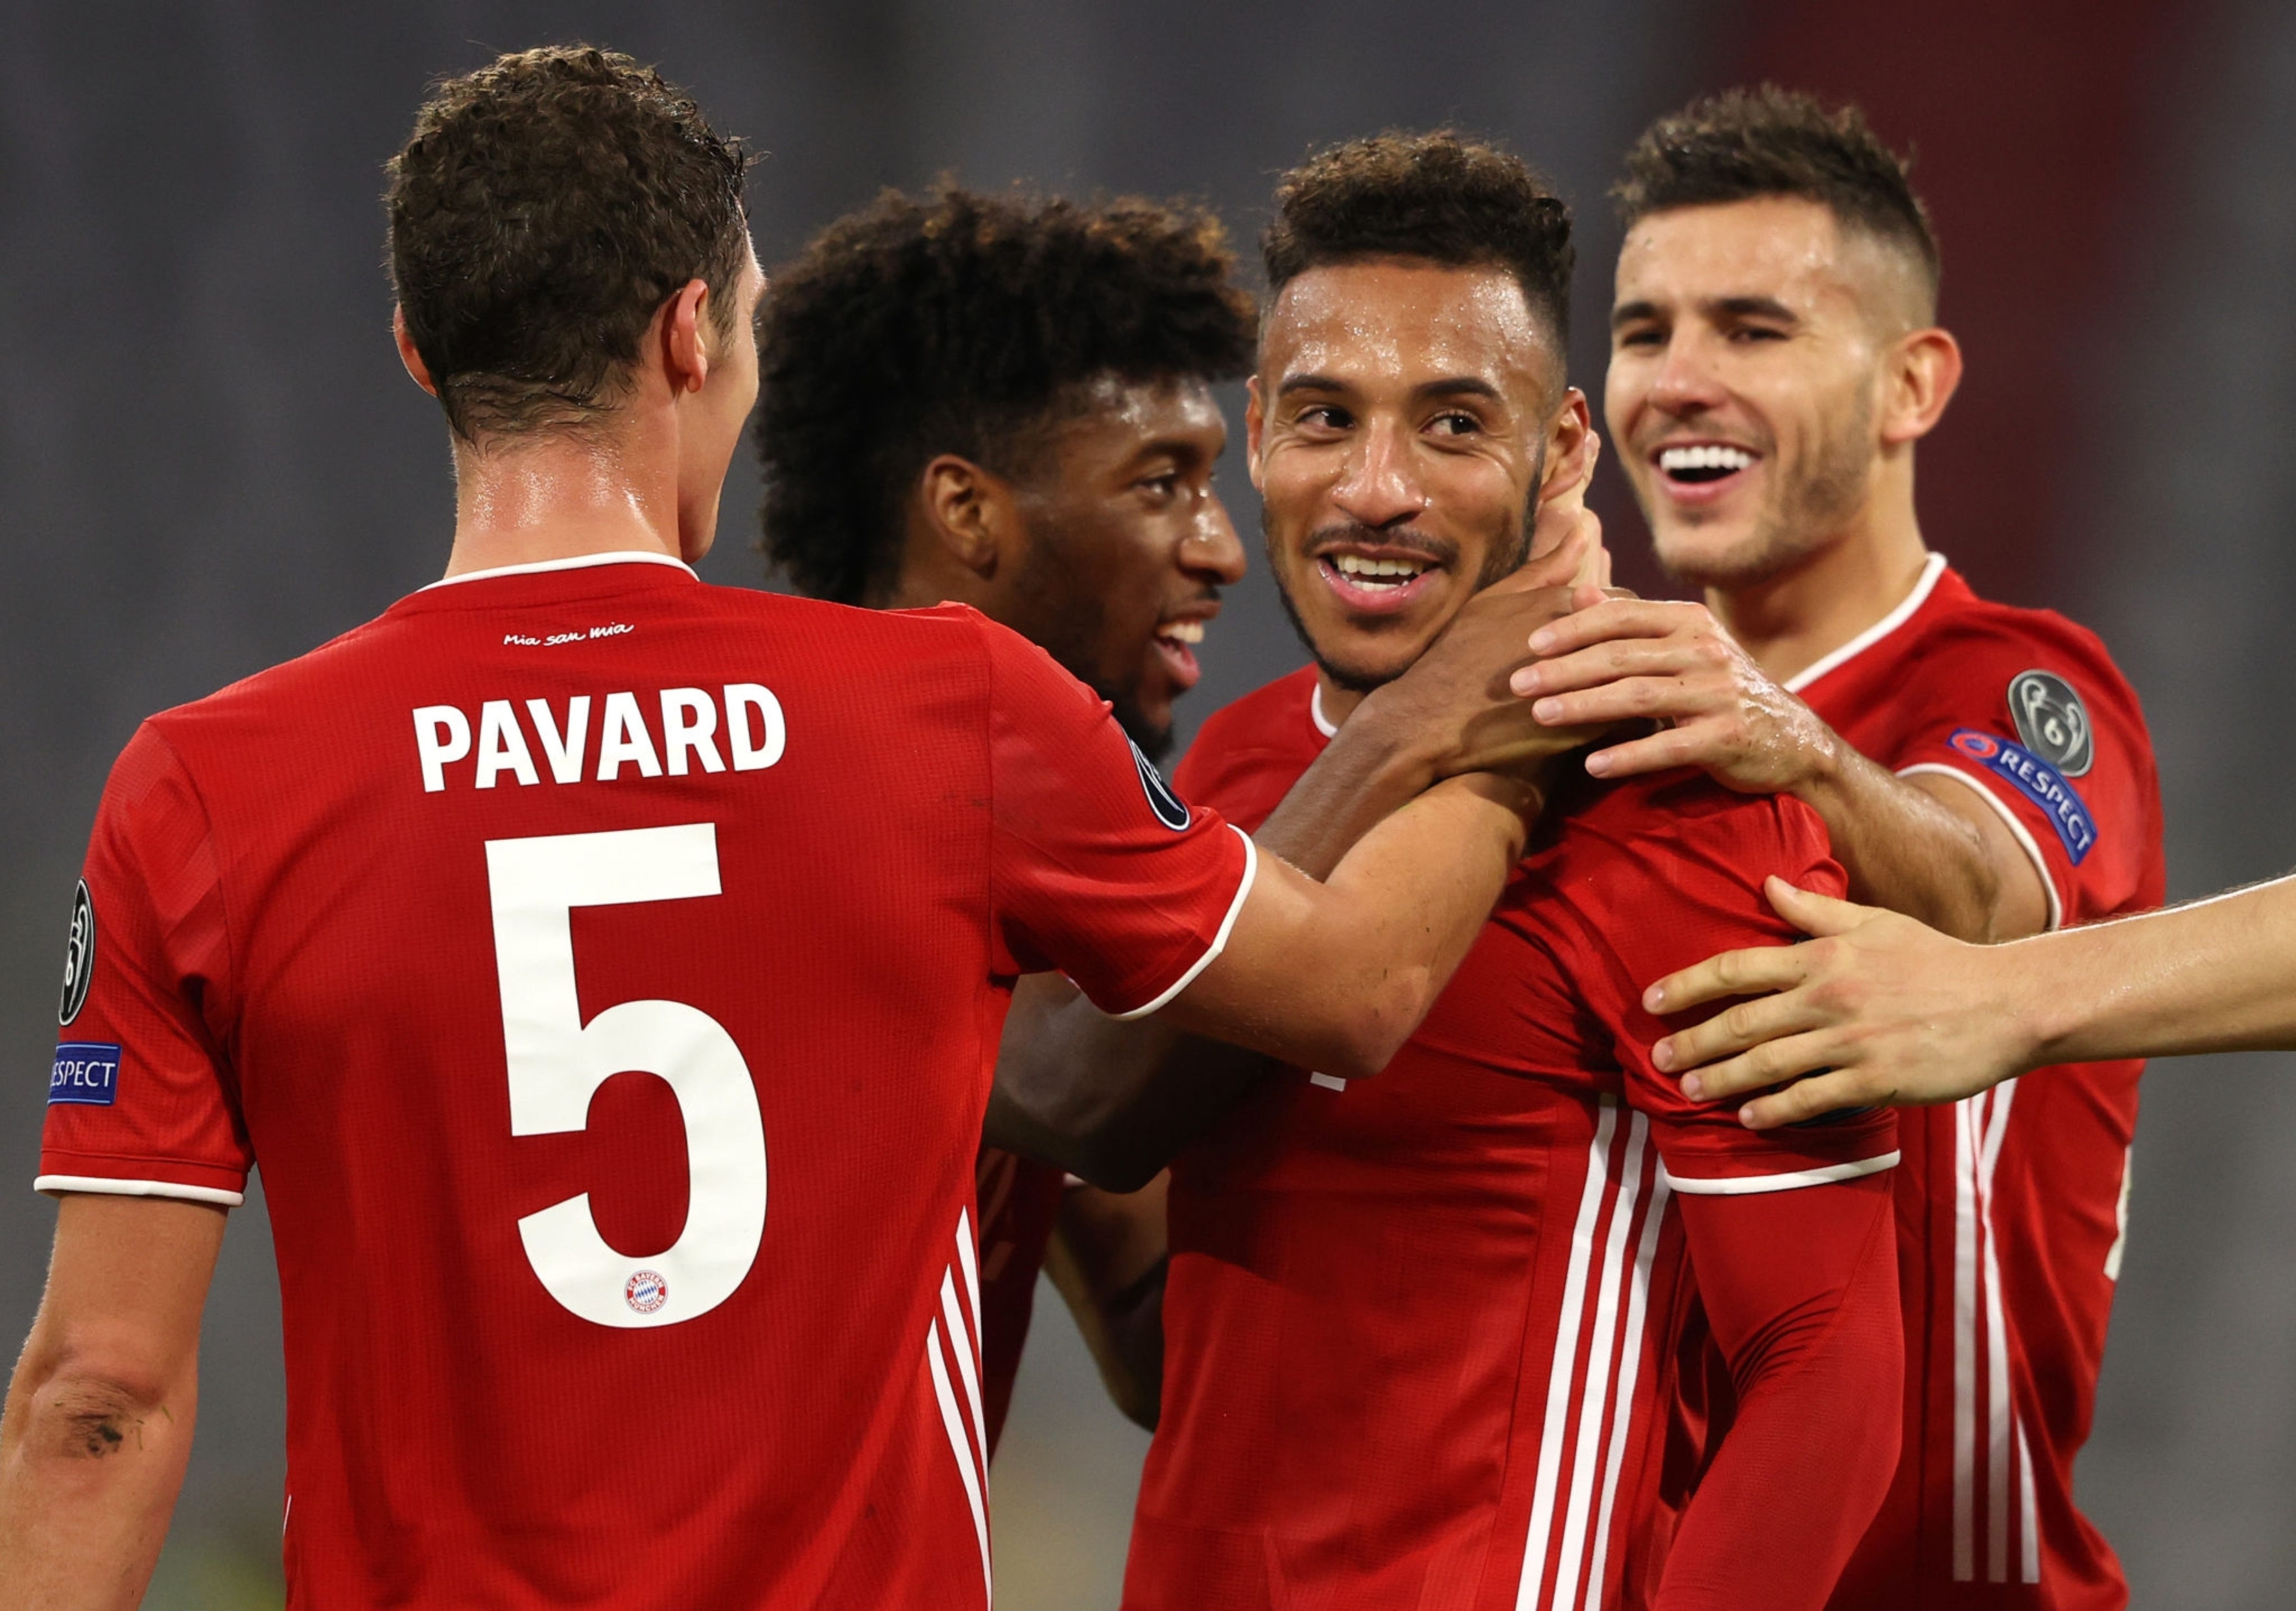 بایرن مونیخ - Bayern Munich - لیگ قهرمانان اروپا - UCL - گلزنی مقابل اتلتیکو مادرید